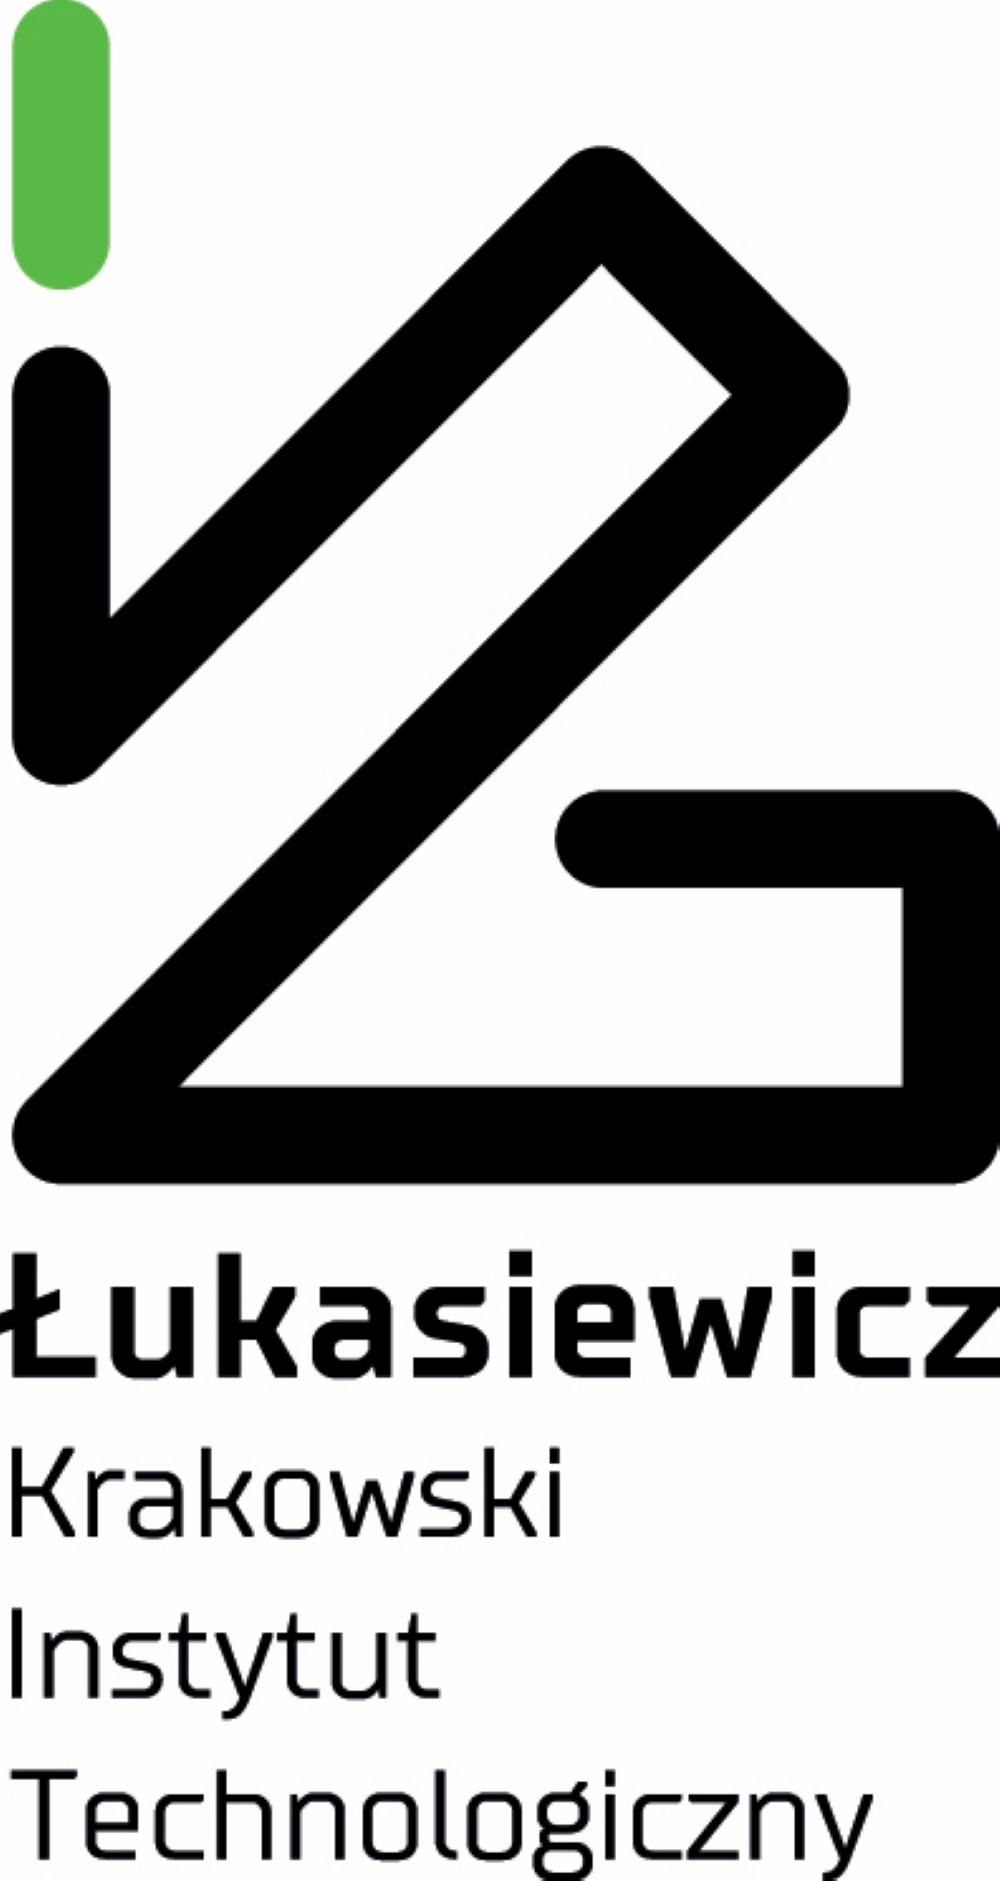 Sieć Badawcza Łukasiewicz - Krakowski Instytut Technologiczny